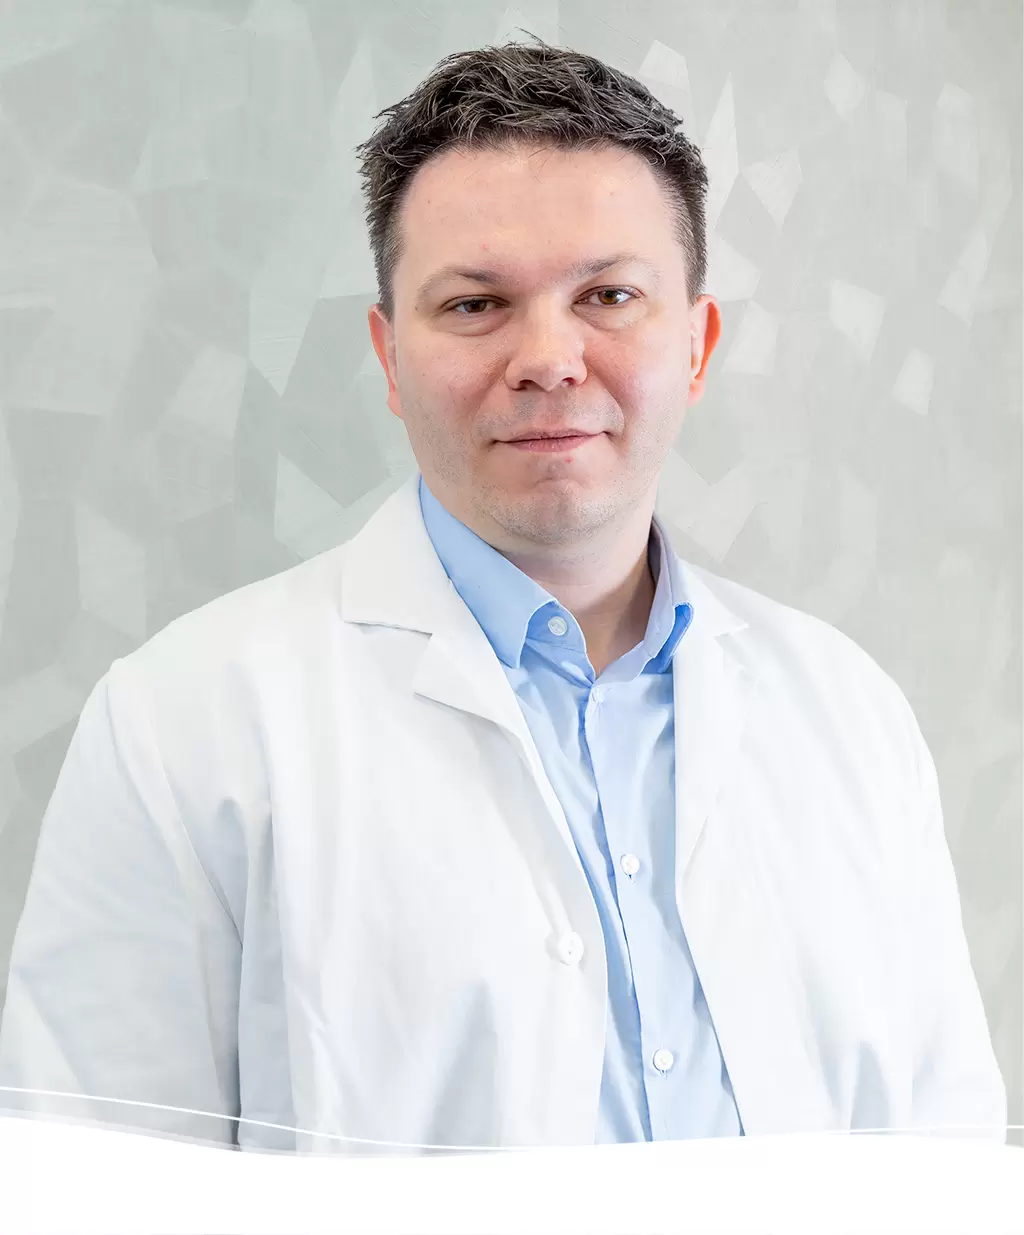 Zeljko Kauric, dr. med. (HR), Facharzt für Augenheilkunde